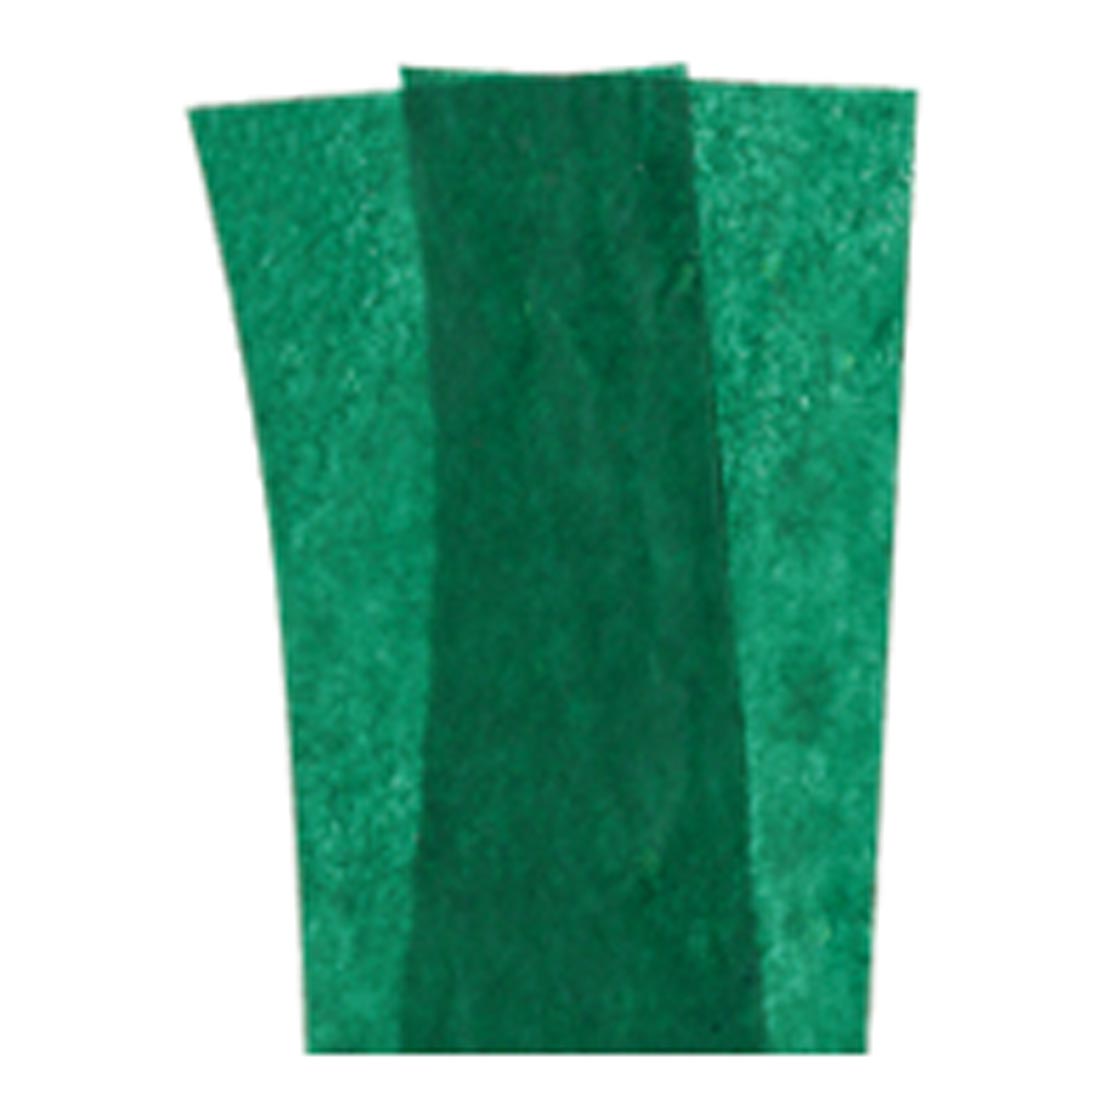 Emerald Green Spectra Bleeding Art Tissue